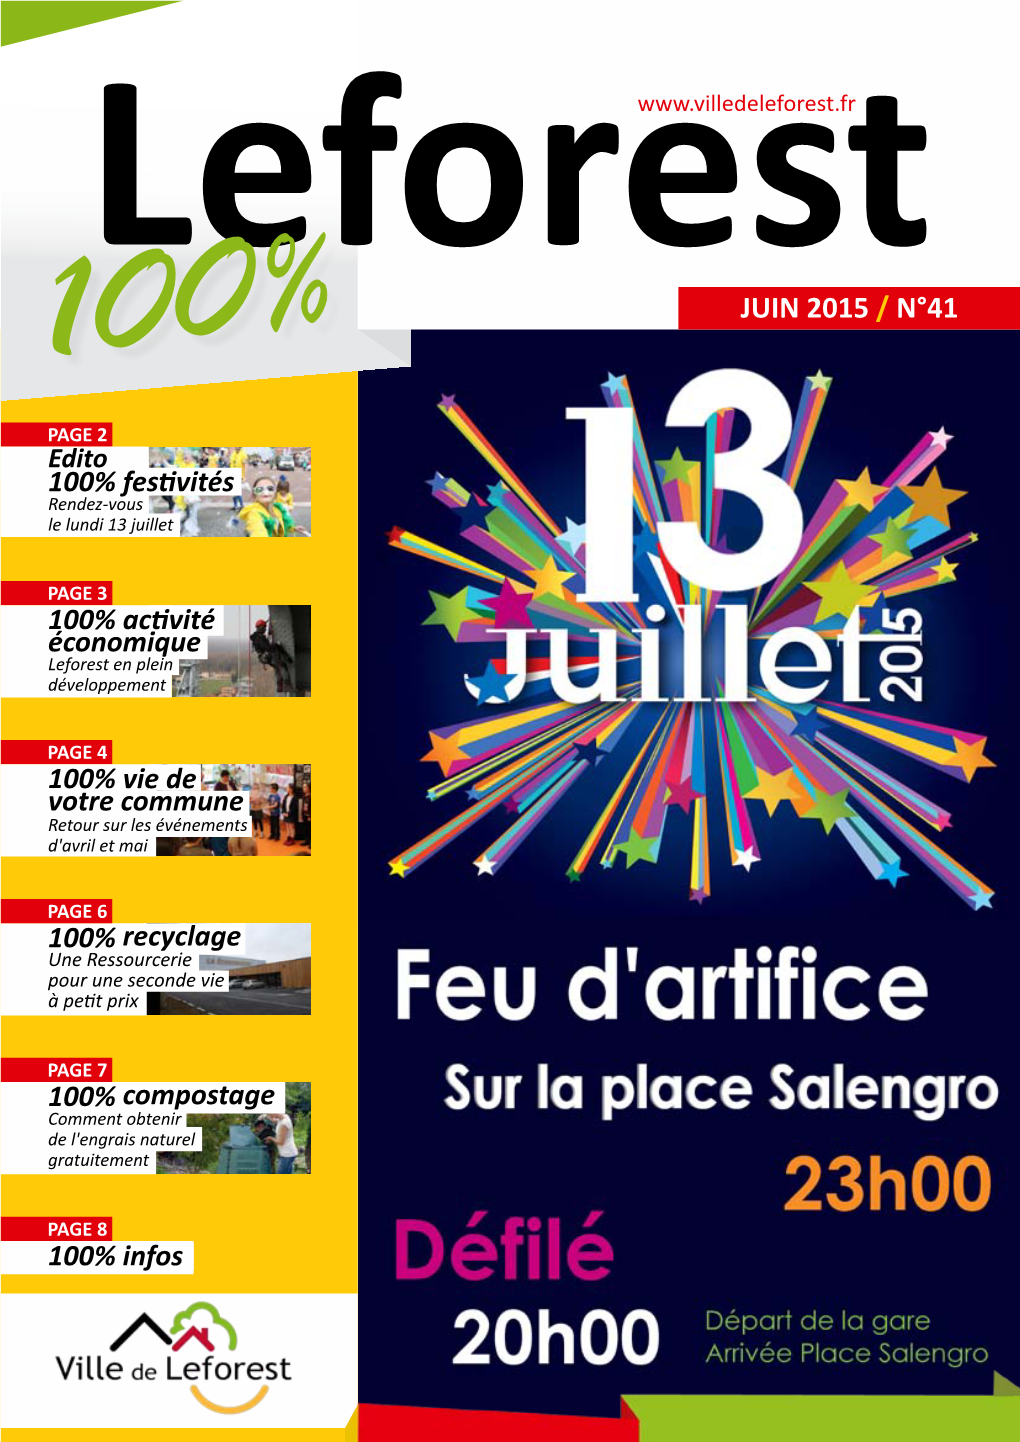 JUIN 2015 / N°41 PAGE 2 Edito 100% Festivités Rendez-Vous Le Lundi 13 Juillet